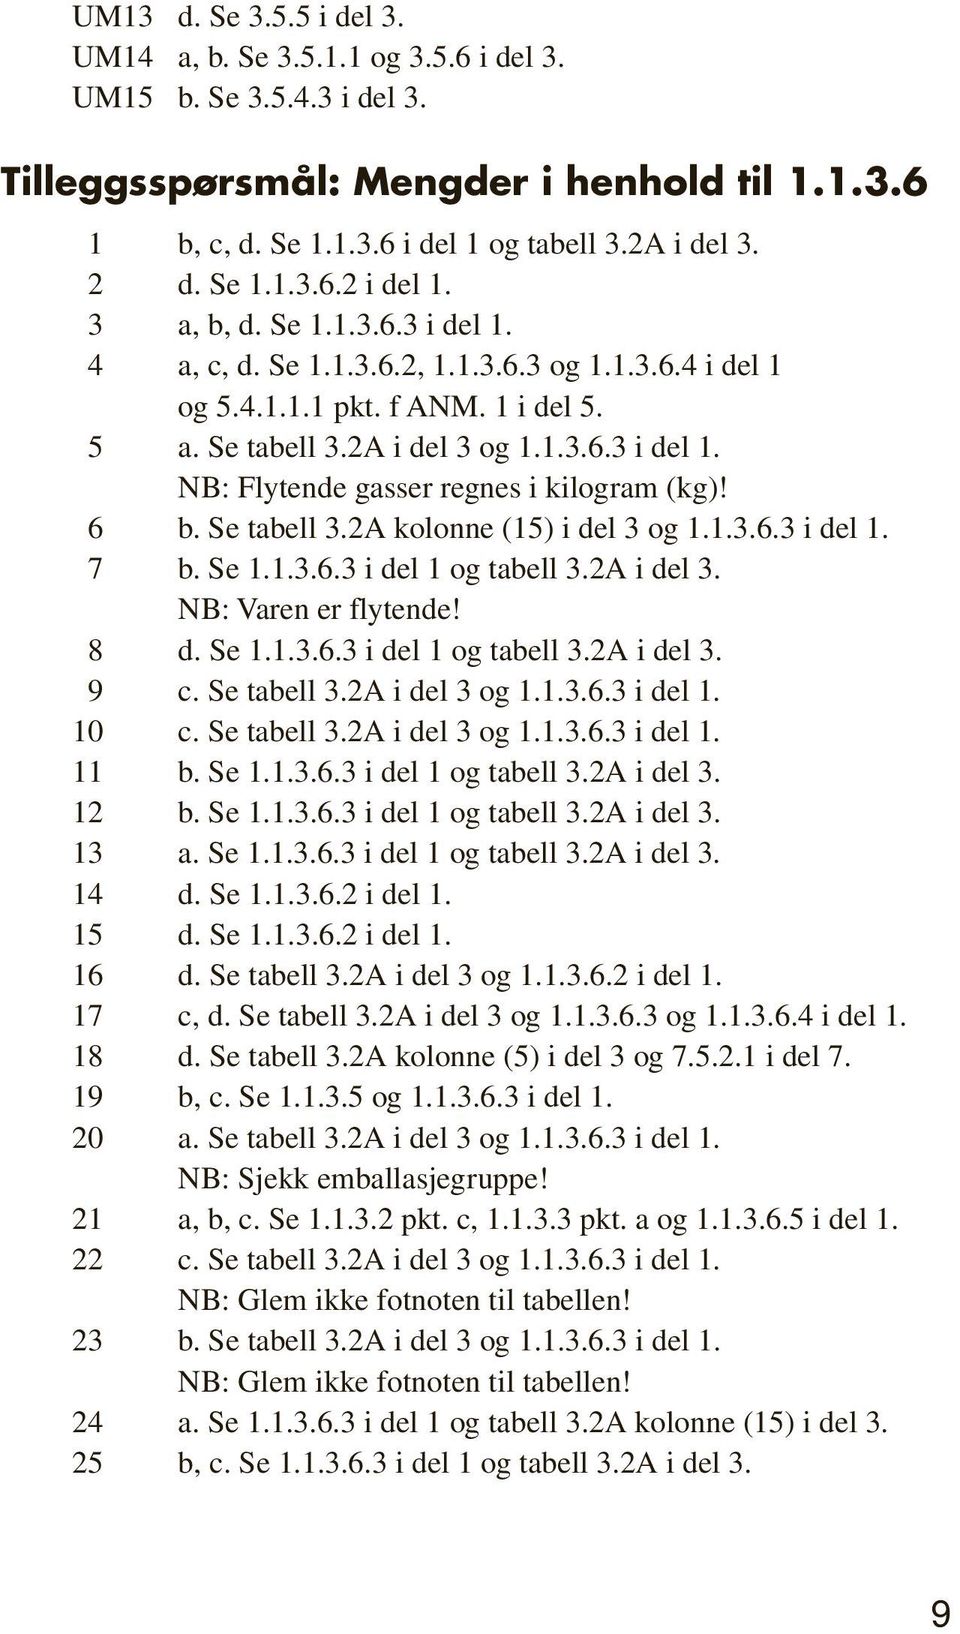 6 b. Se tabell 3.2A kolonne (15) i del 3 og 1.1.3.6.3 i del 1. 7 b. Se 1.1.3.6.3 i del 1 og tabell 3.2A i del 3. NB: Varen er flytende! 8 d. Se 1.1.3.6.3 i del 1 og tabell 3.2A i del 3. 9 c.